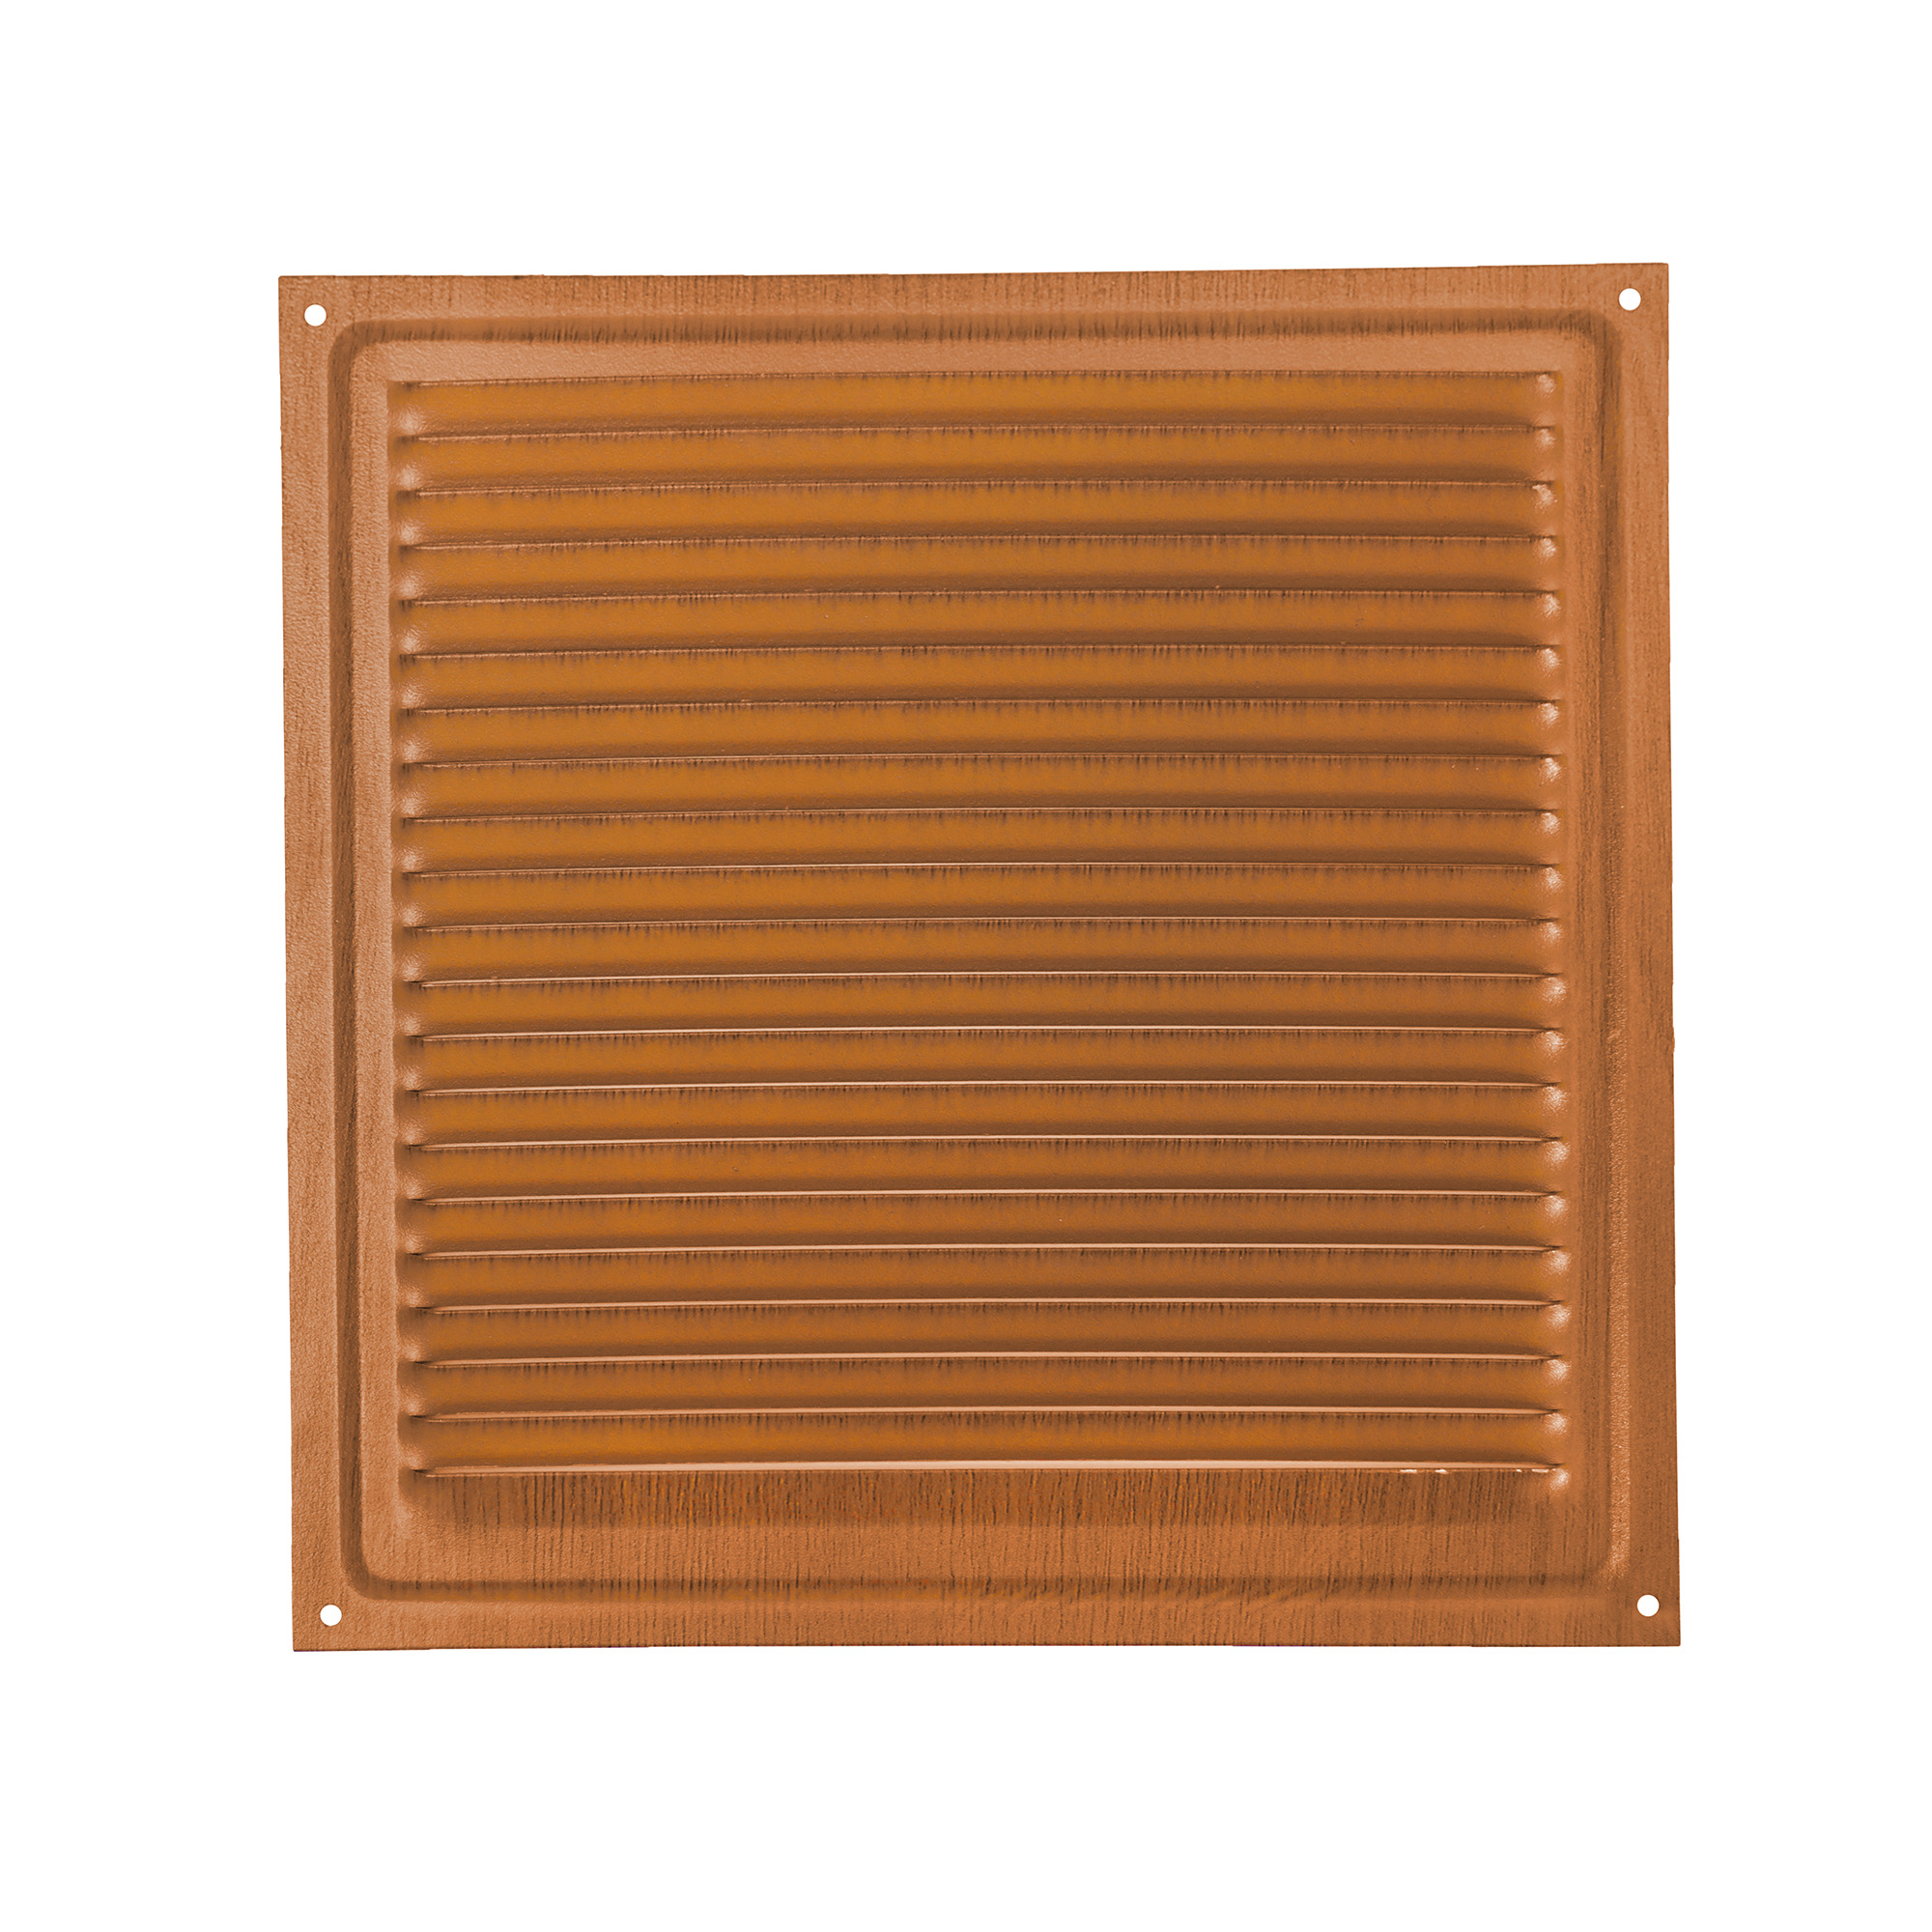 Решетка вентиляционная Трибатрон Вишня 150x150 мм решетка вентиляционная equation 150x150 мм пластик цвет коричневый